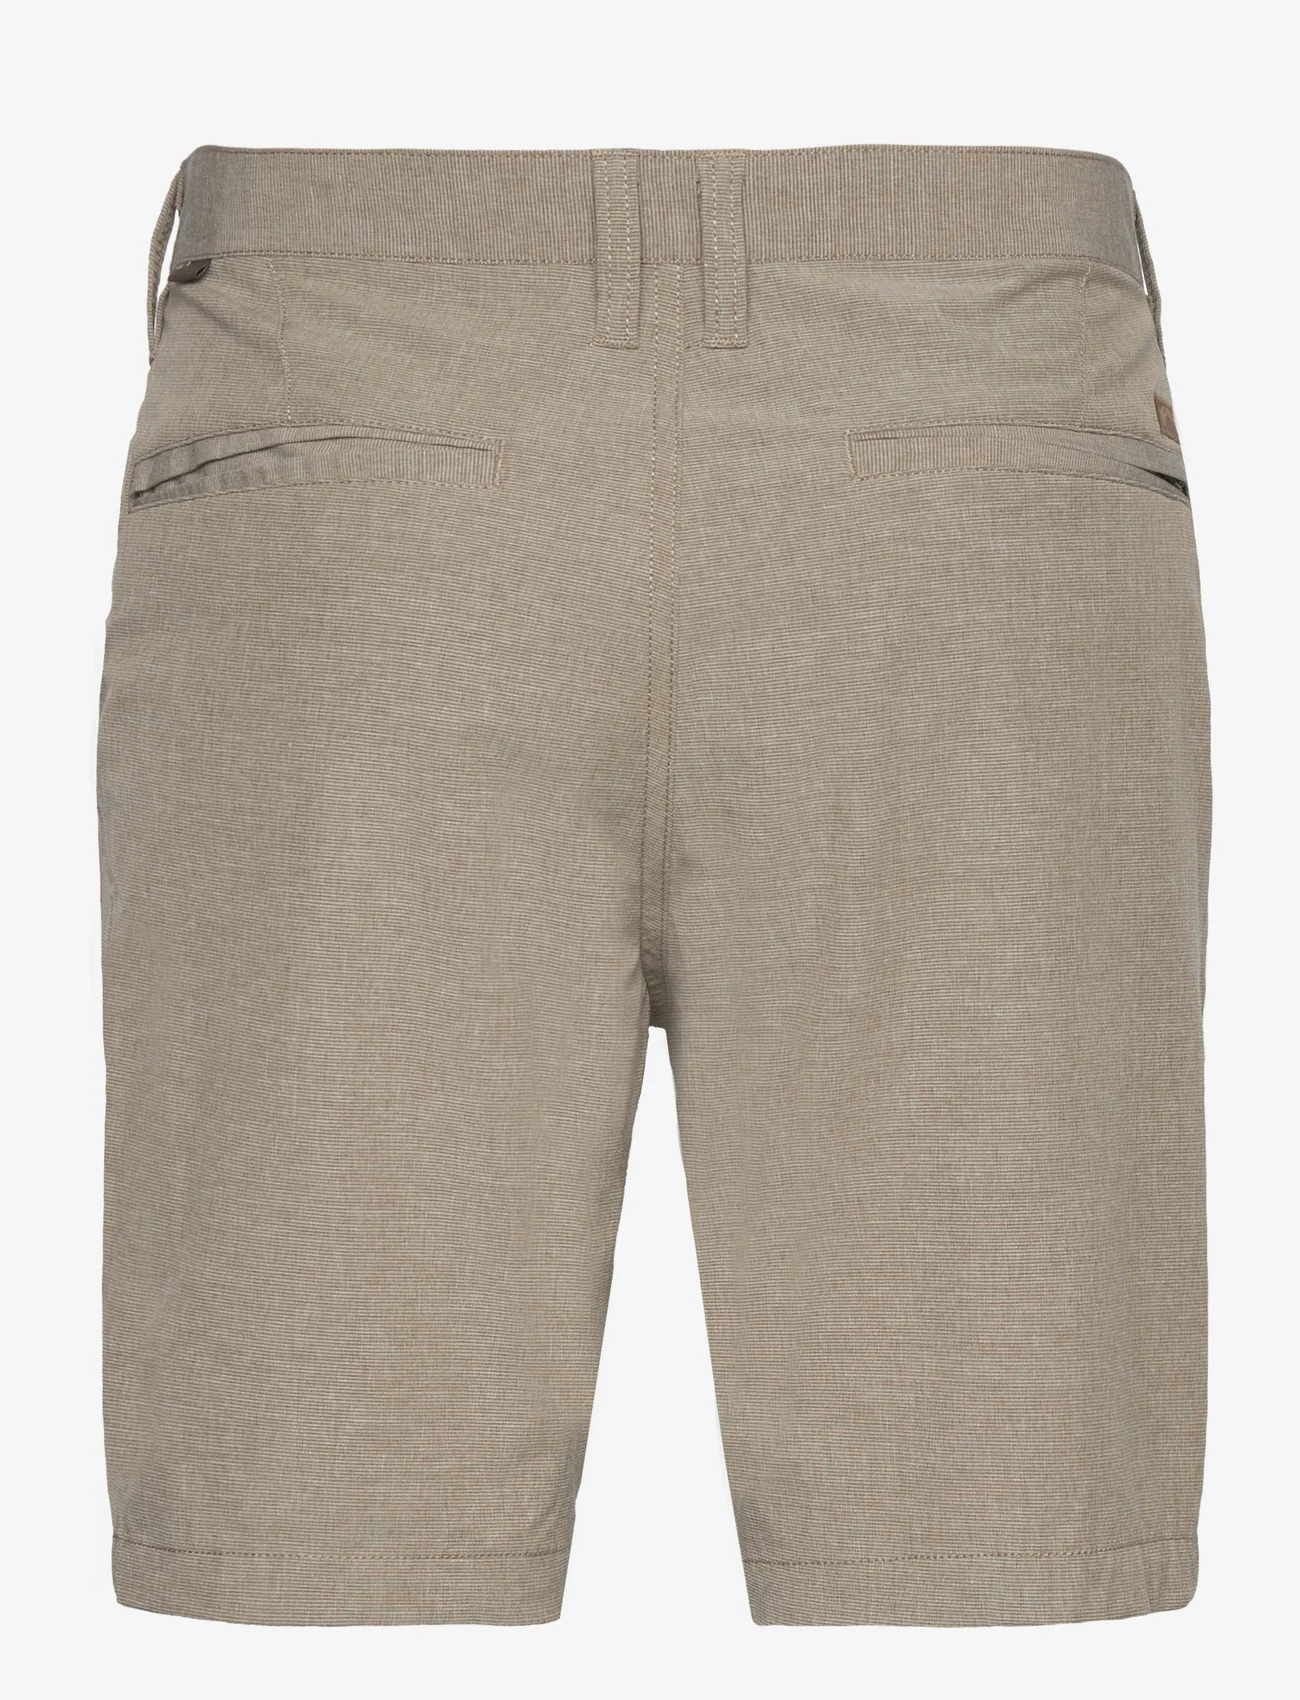 Billabong - CROSSFIRE MID - chinos shorts - khaki - 1